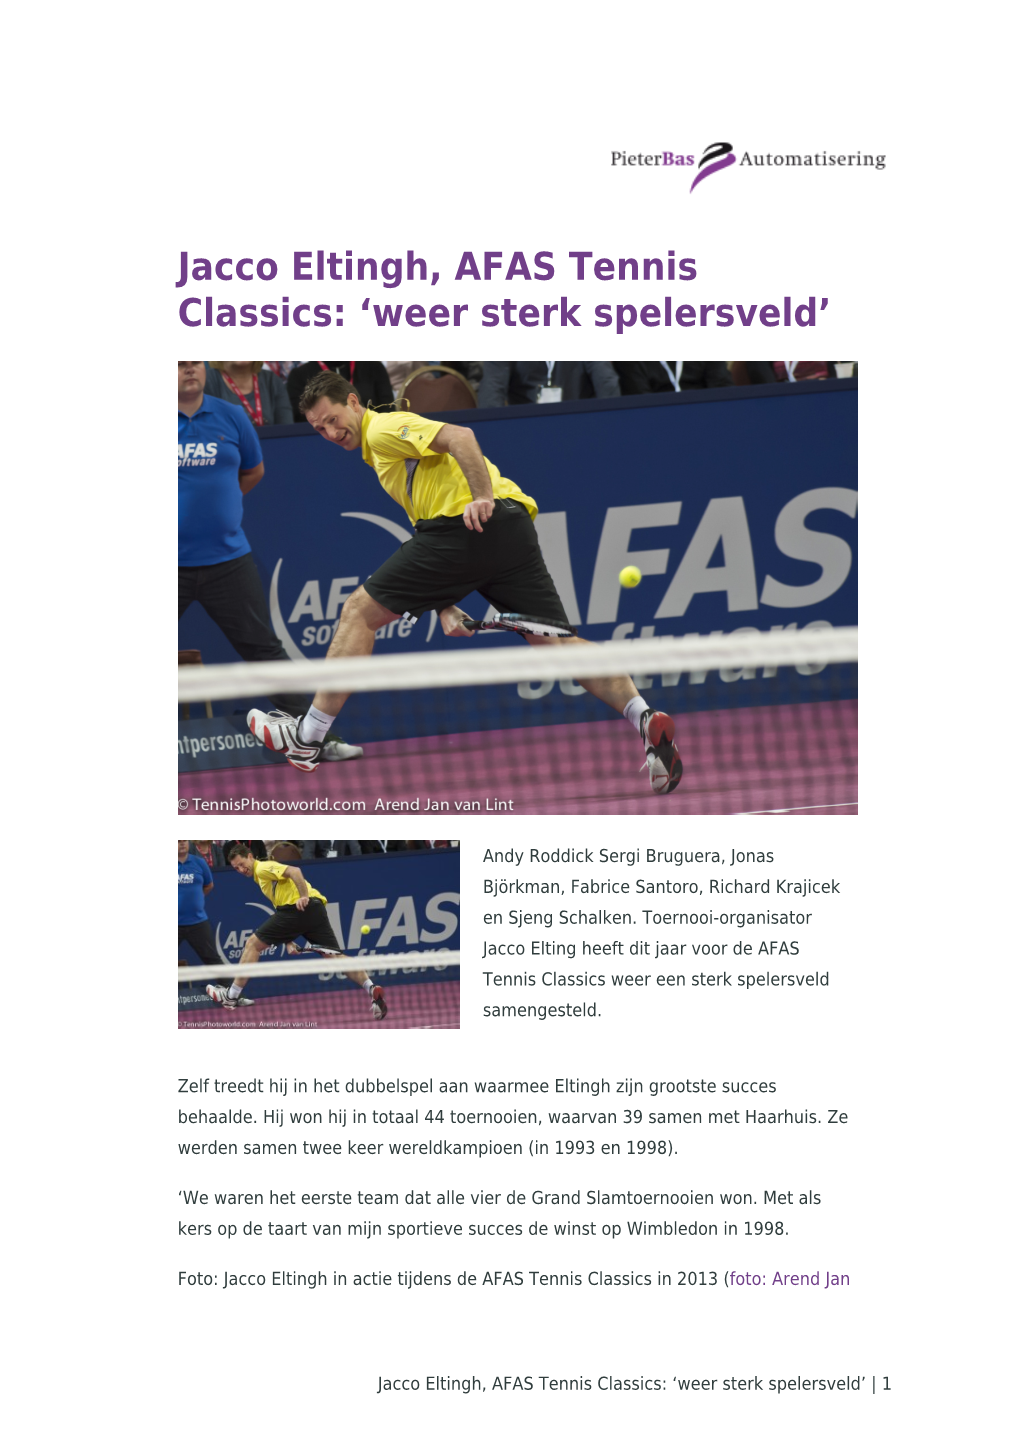 Jacco Eltingh, AFAS Tennis Classics: ‘Weer Sterk Spelersveld’